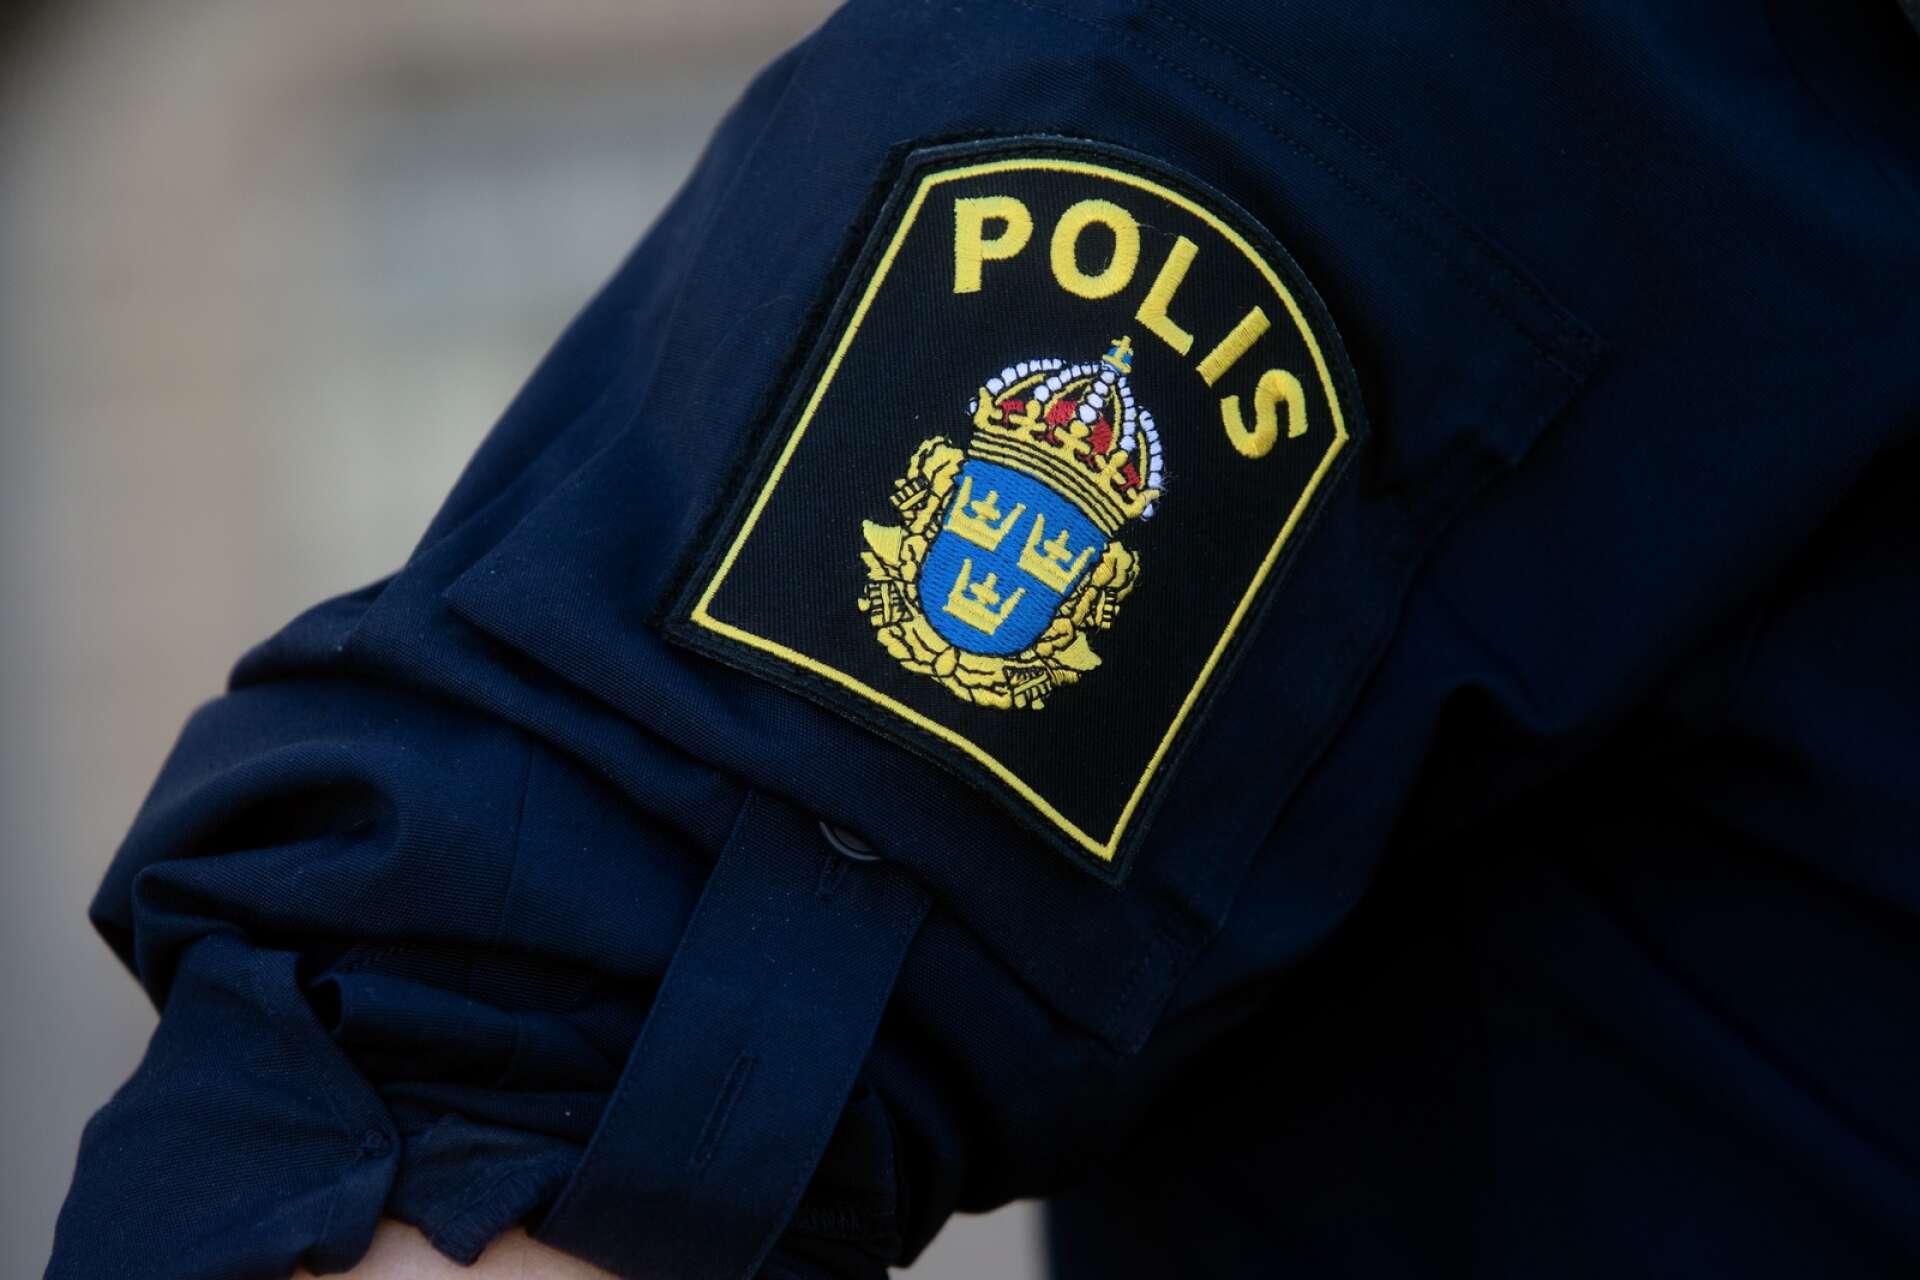 Fler sexualbrottsanmälningar i Arvika än på tolv år, visar ny statistik från BRÅ